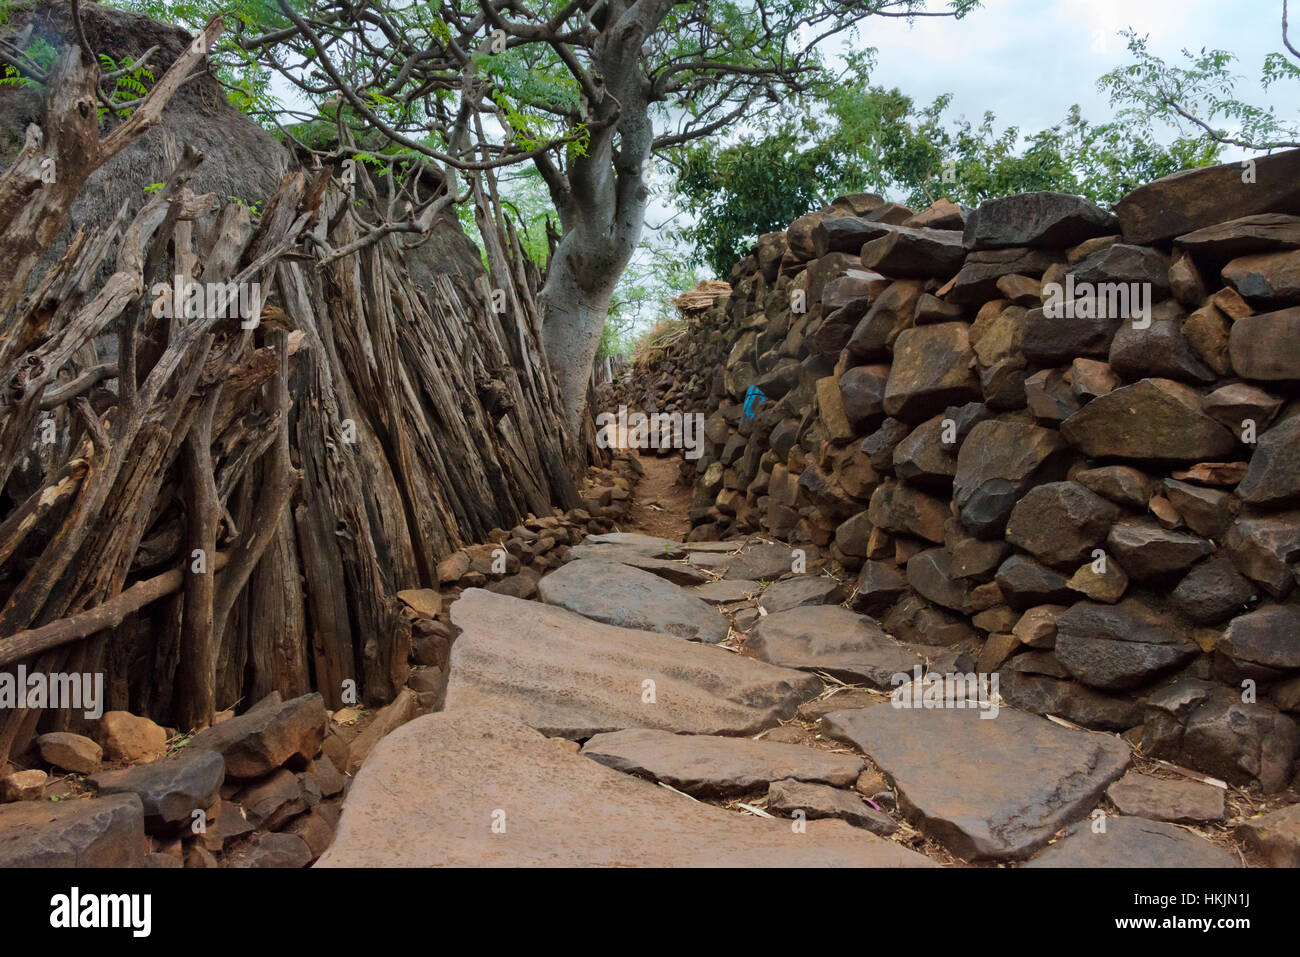 El Paisaje Cultural de Konso (Patrimonio de la humanidad de la UNESCO), la casa de piedra, Etiopía Foto de stock